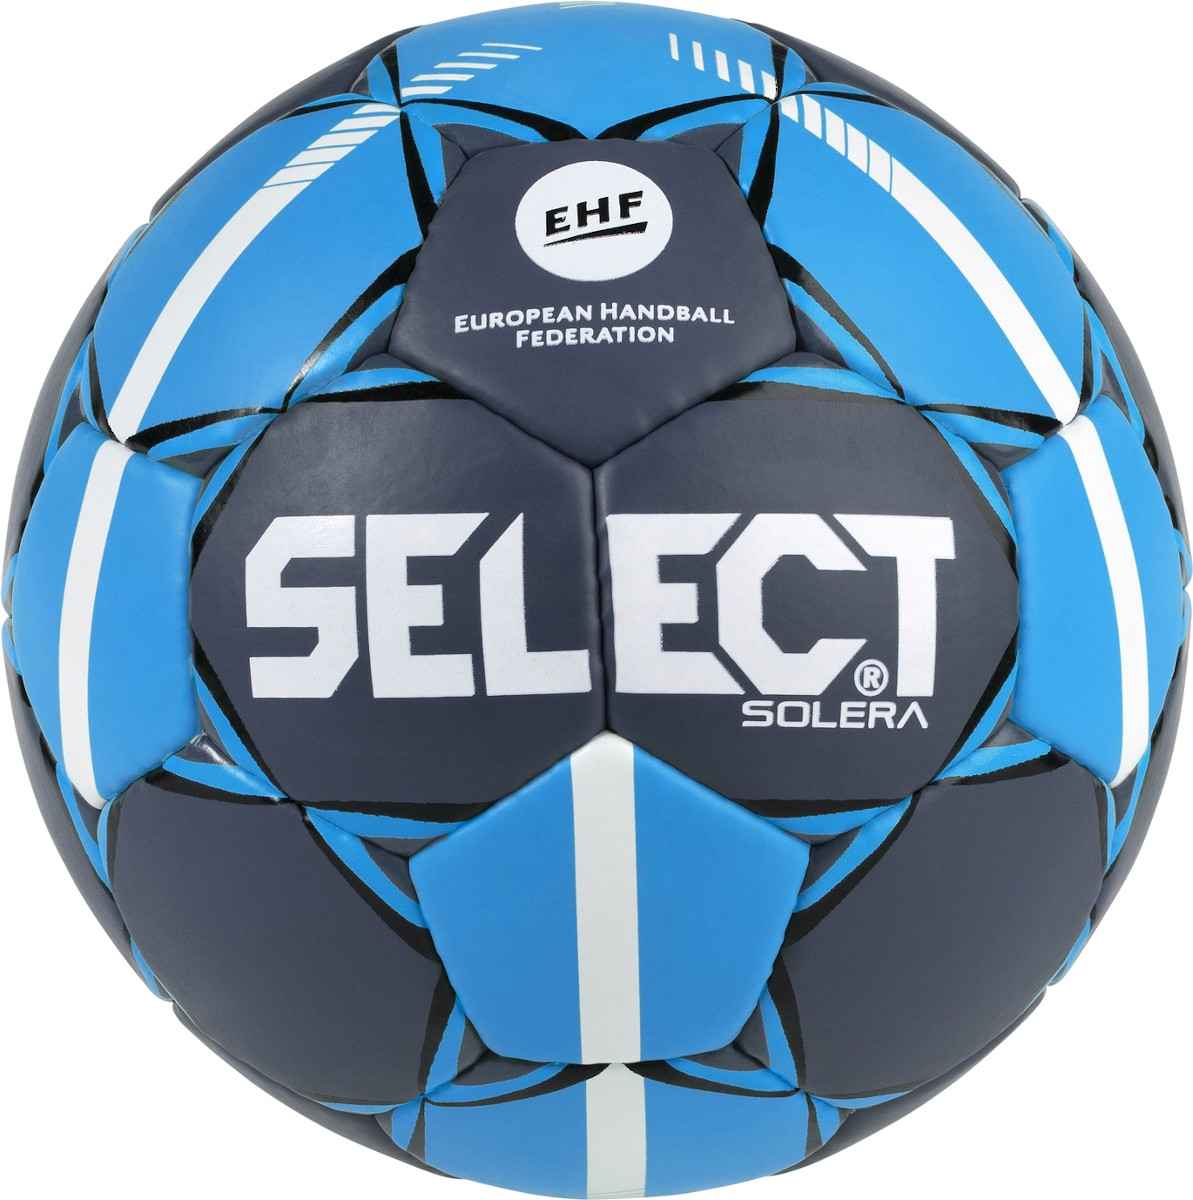 Μπάλα Select SOLERA HANDBALL